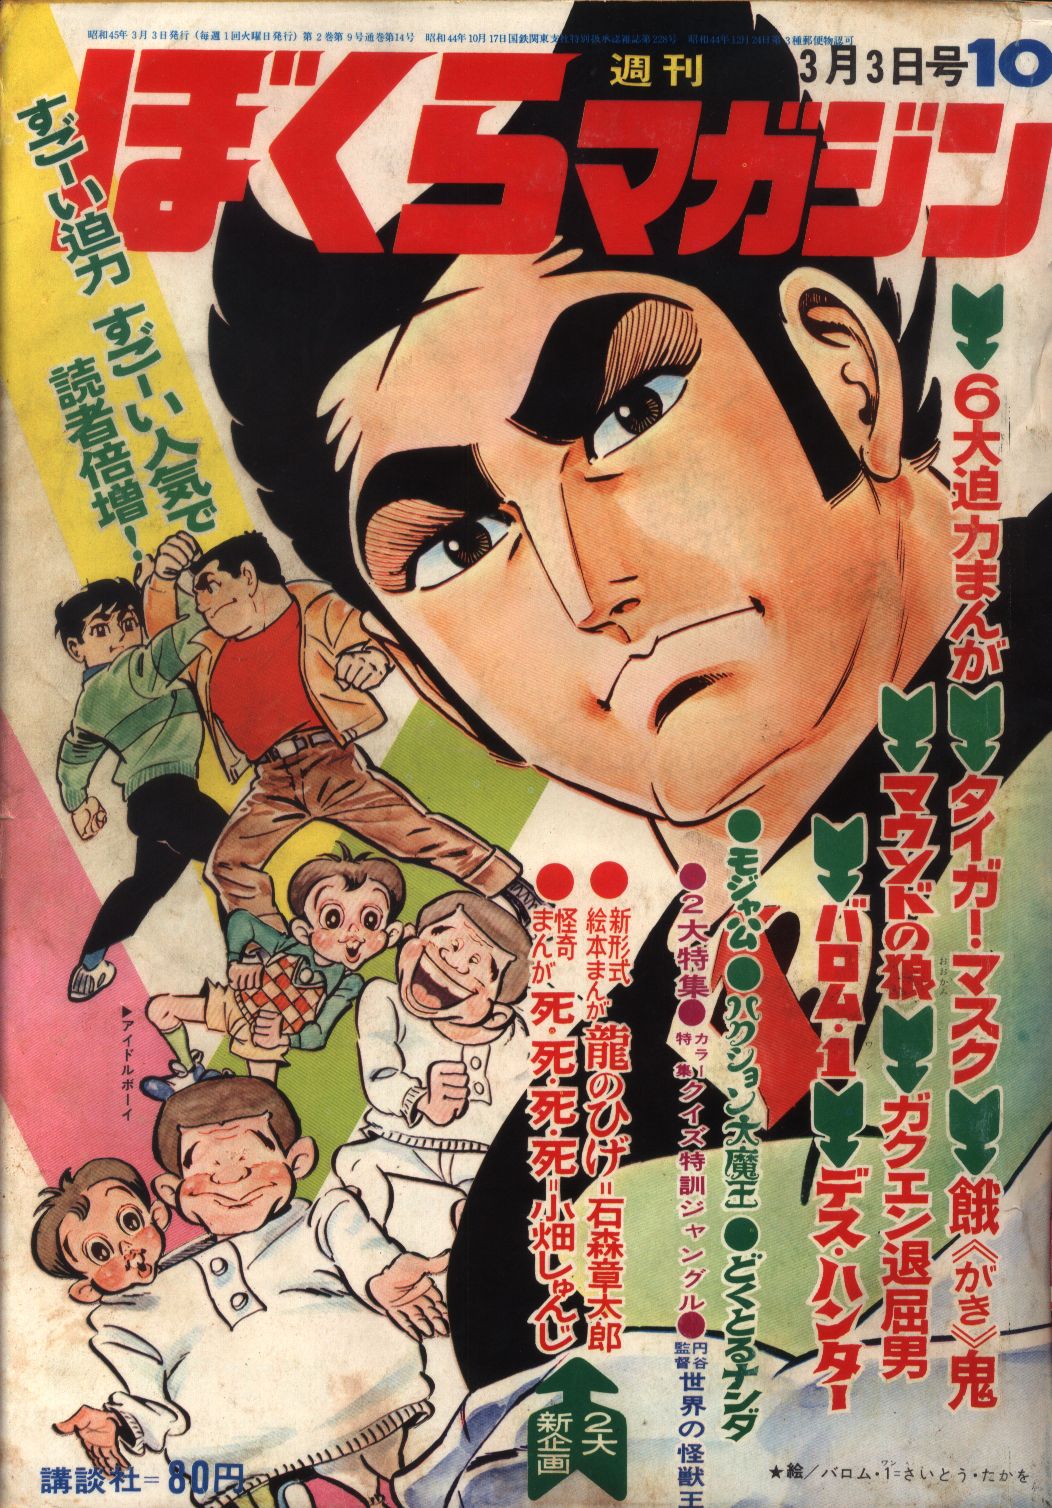 ぼくらマガジン 1970年 41号-